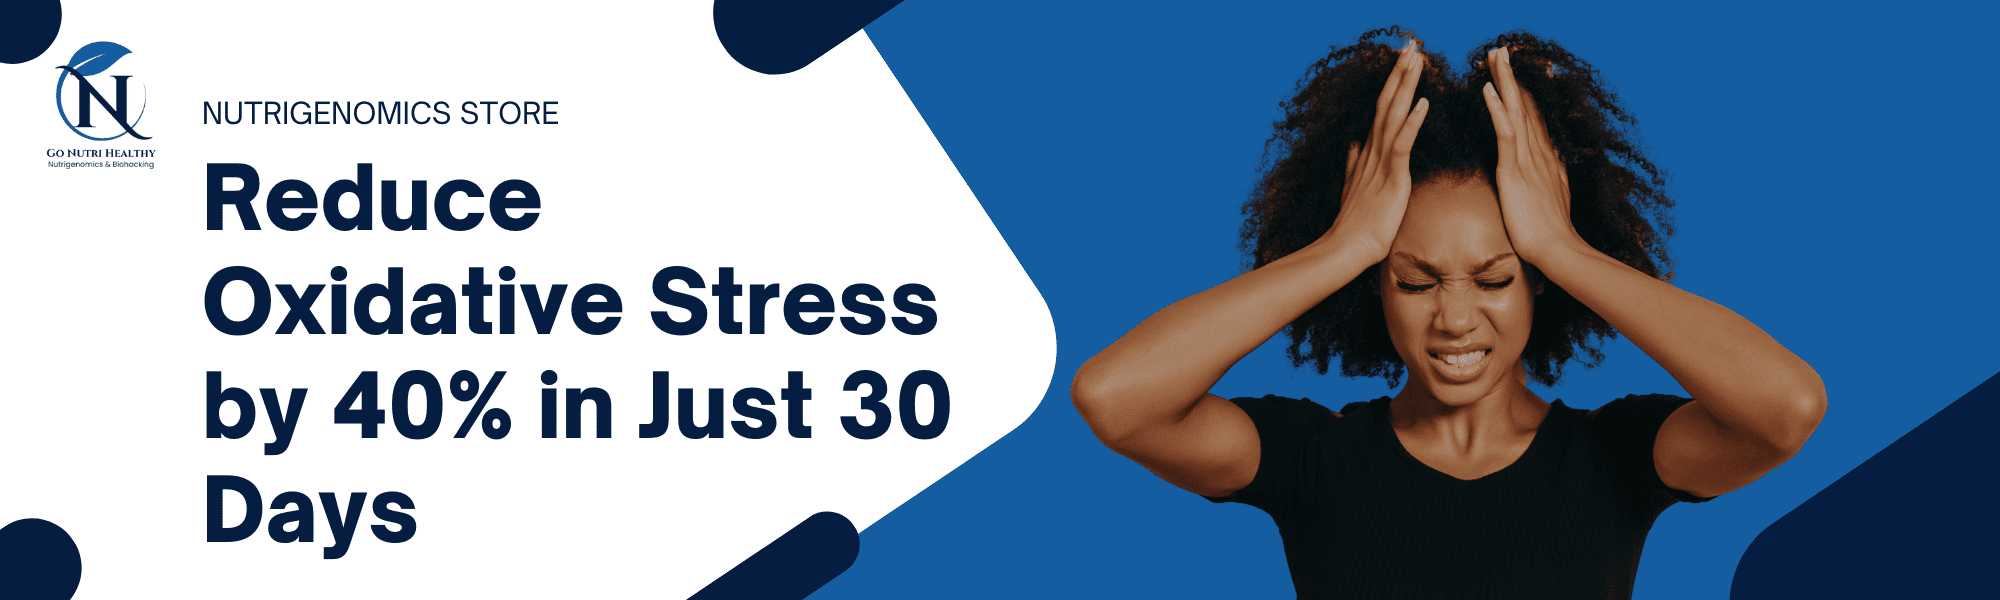 Riduzione dello stress ossidativo di 40% in soli 30 giorni